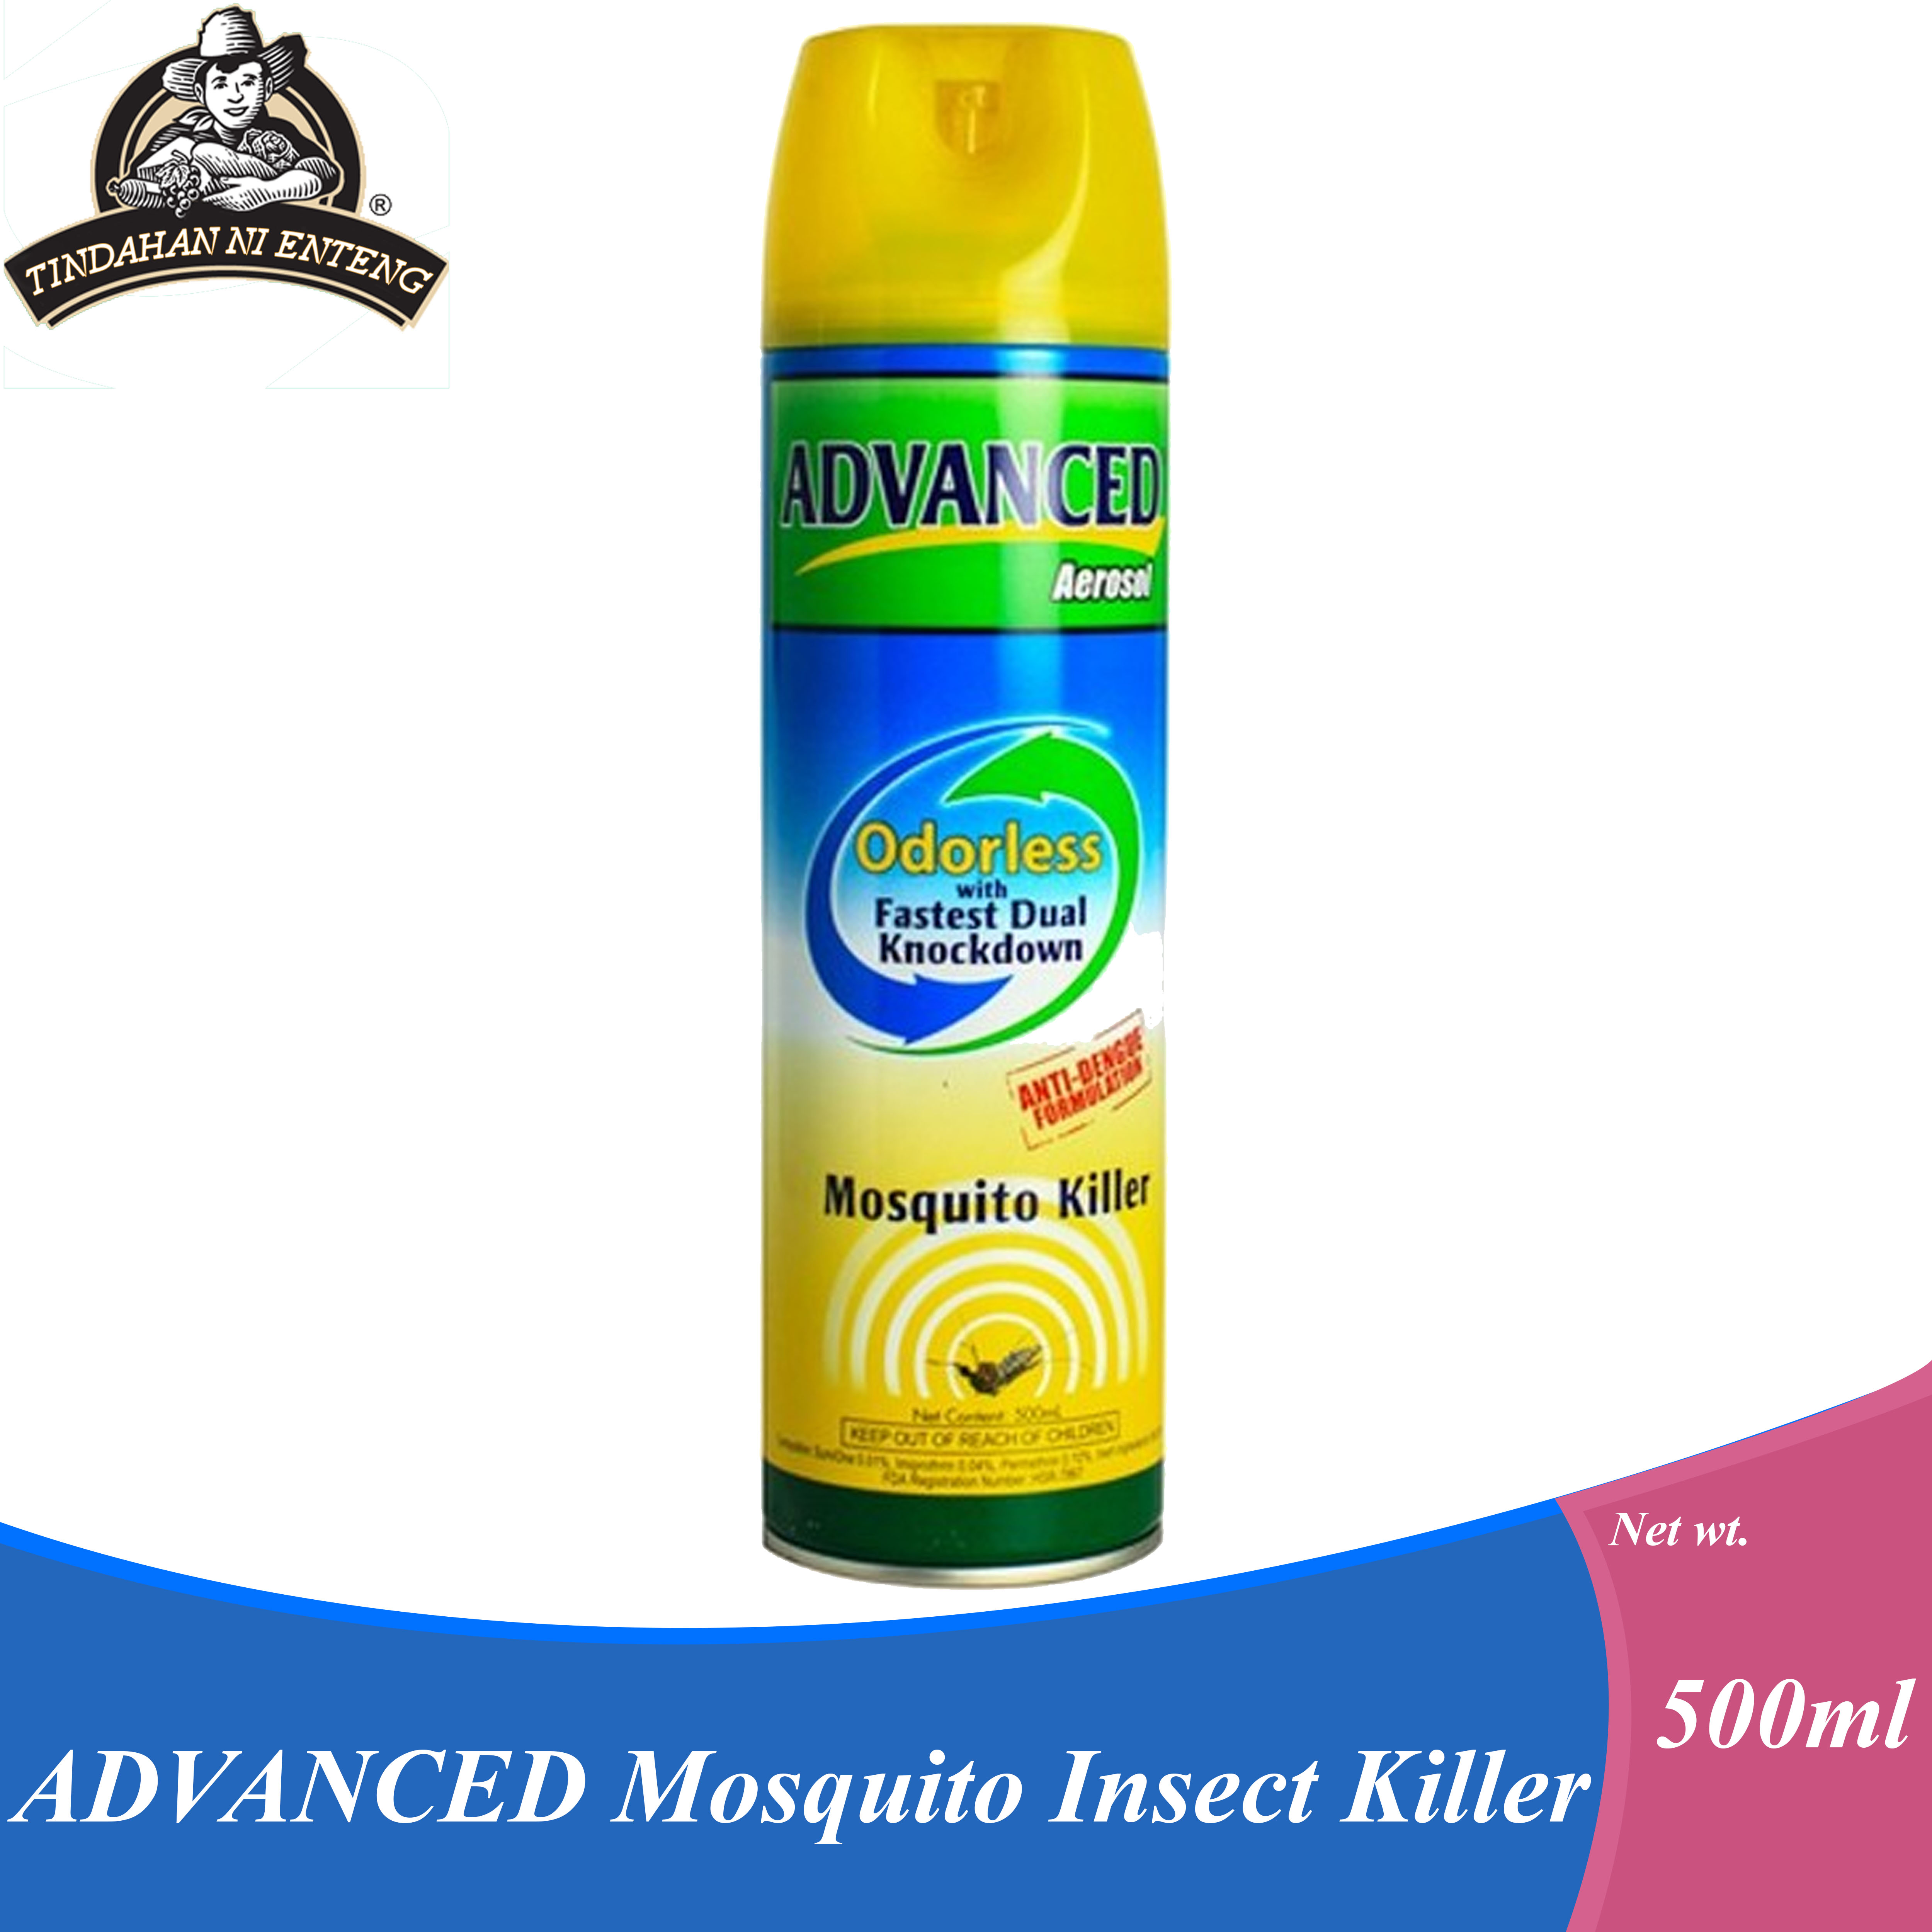 advanced mosquito killer